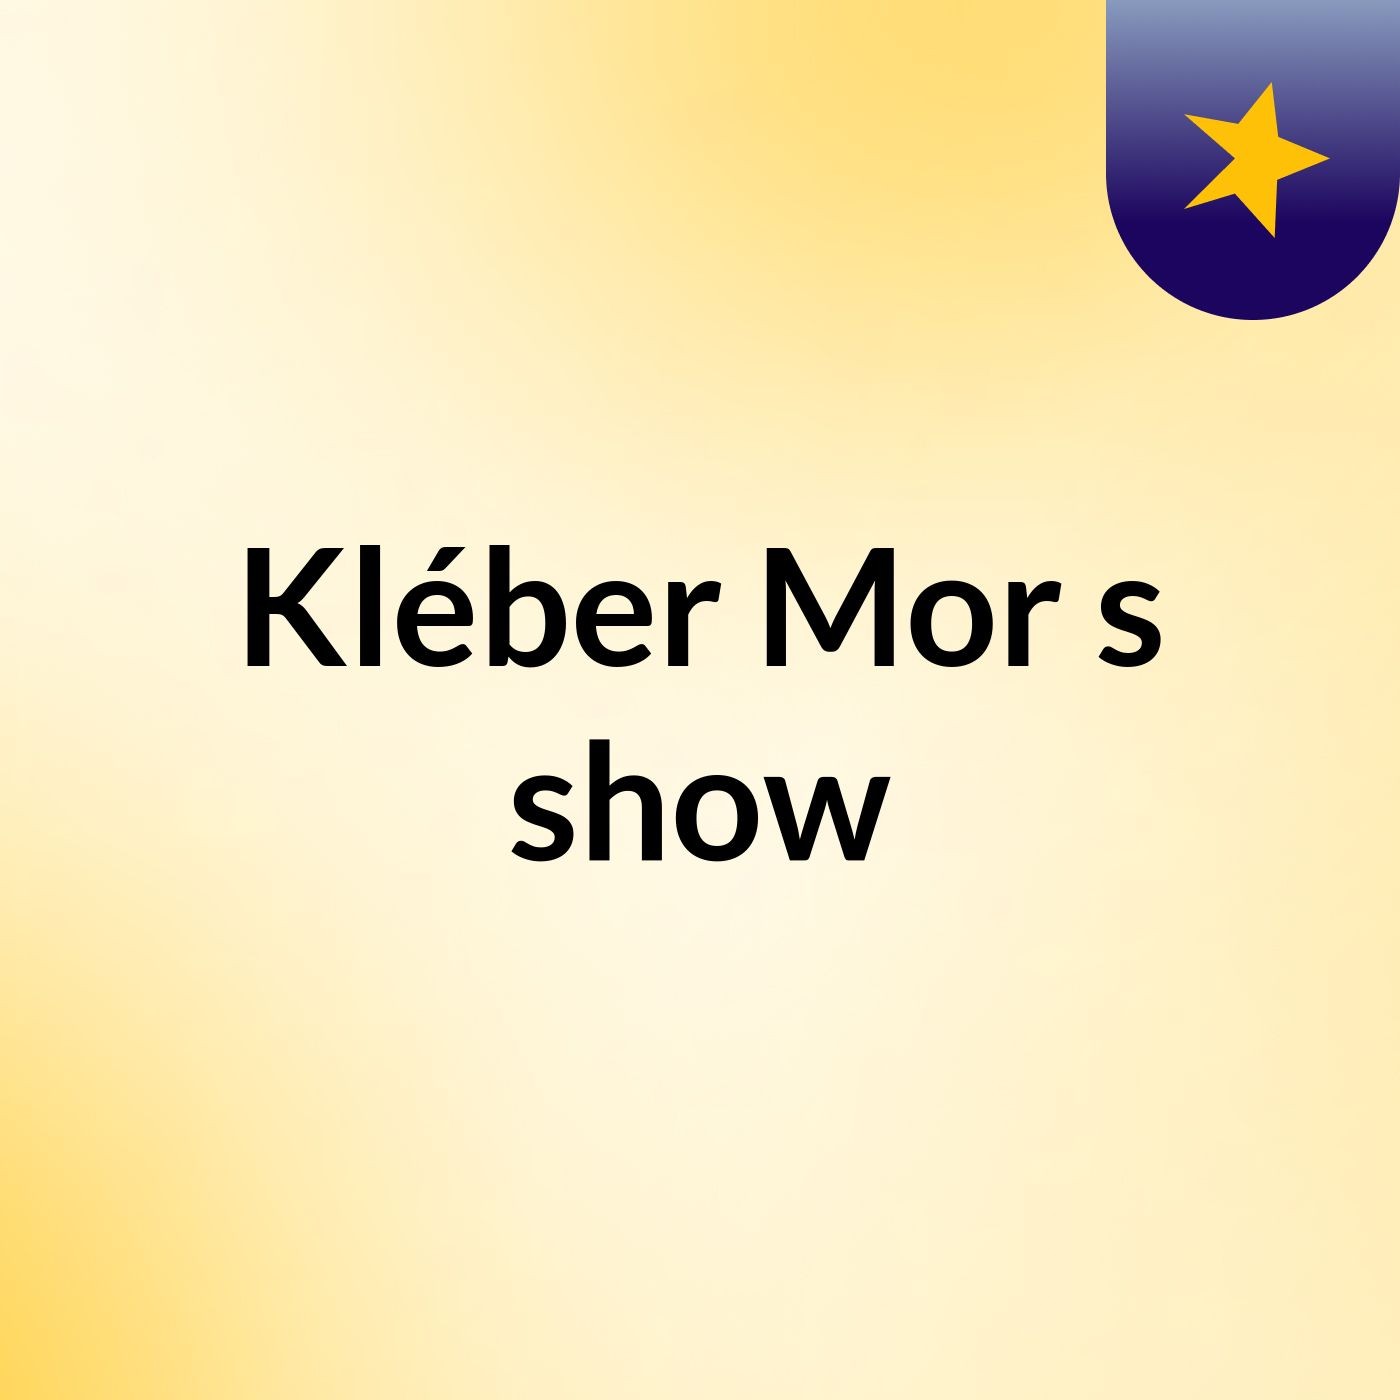 Kléber Mor's show